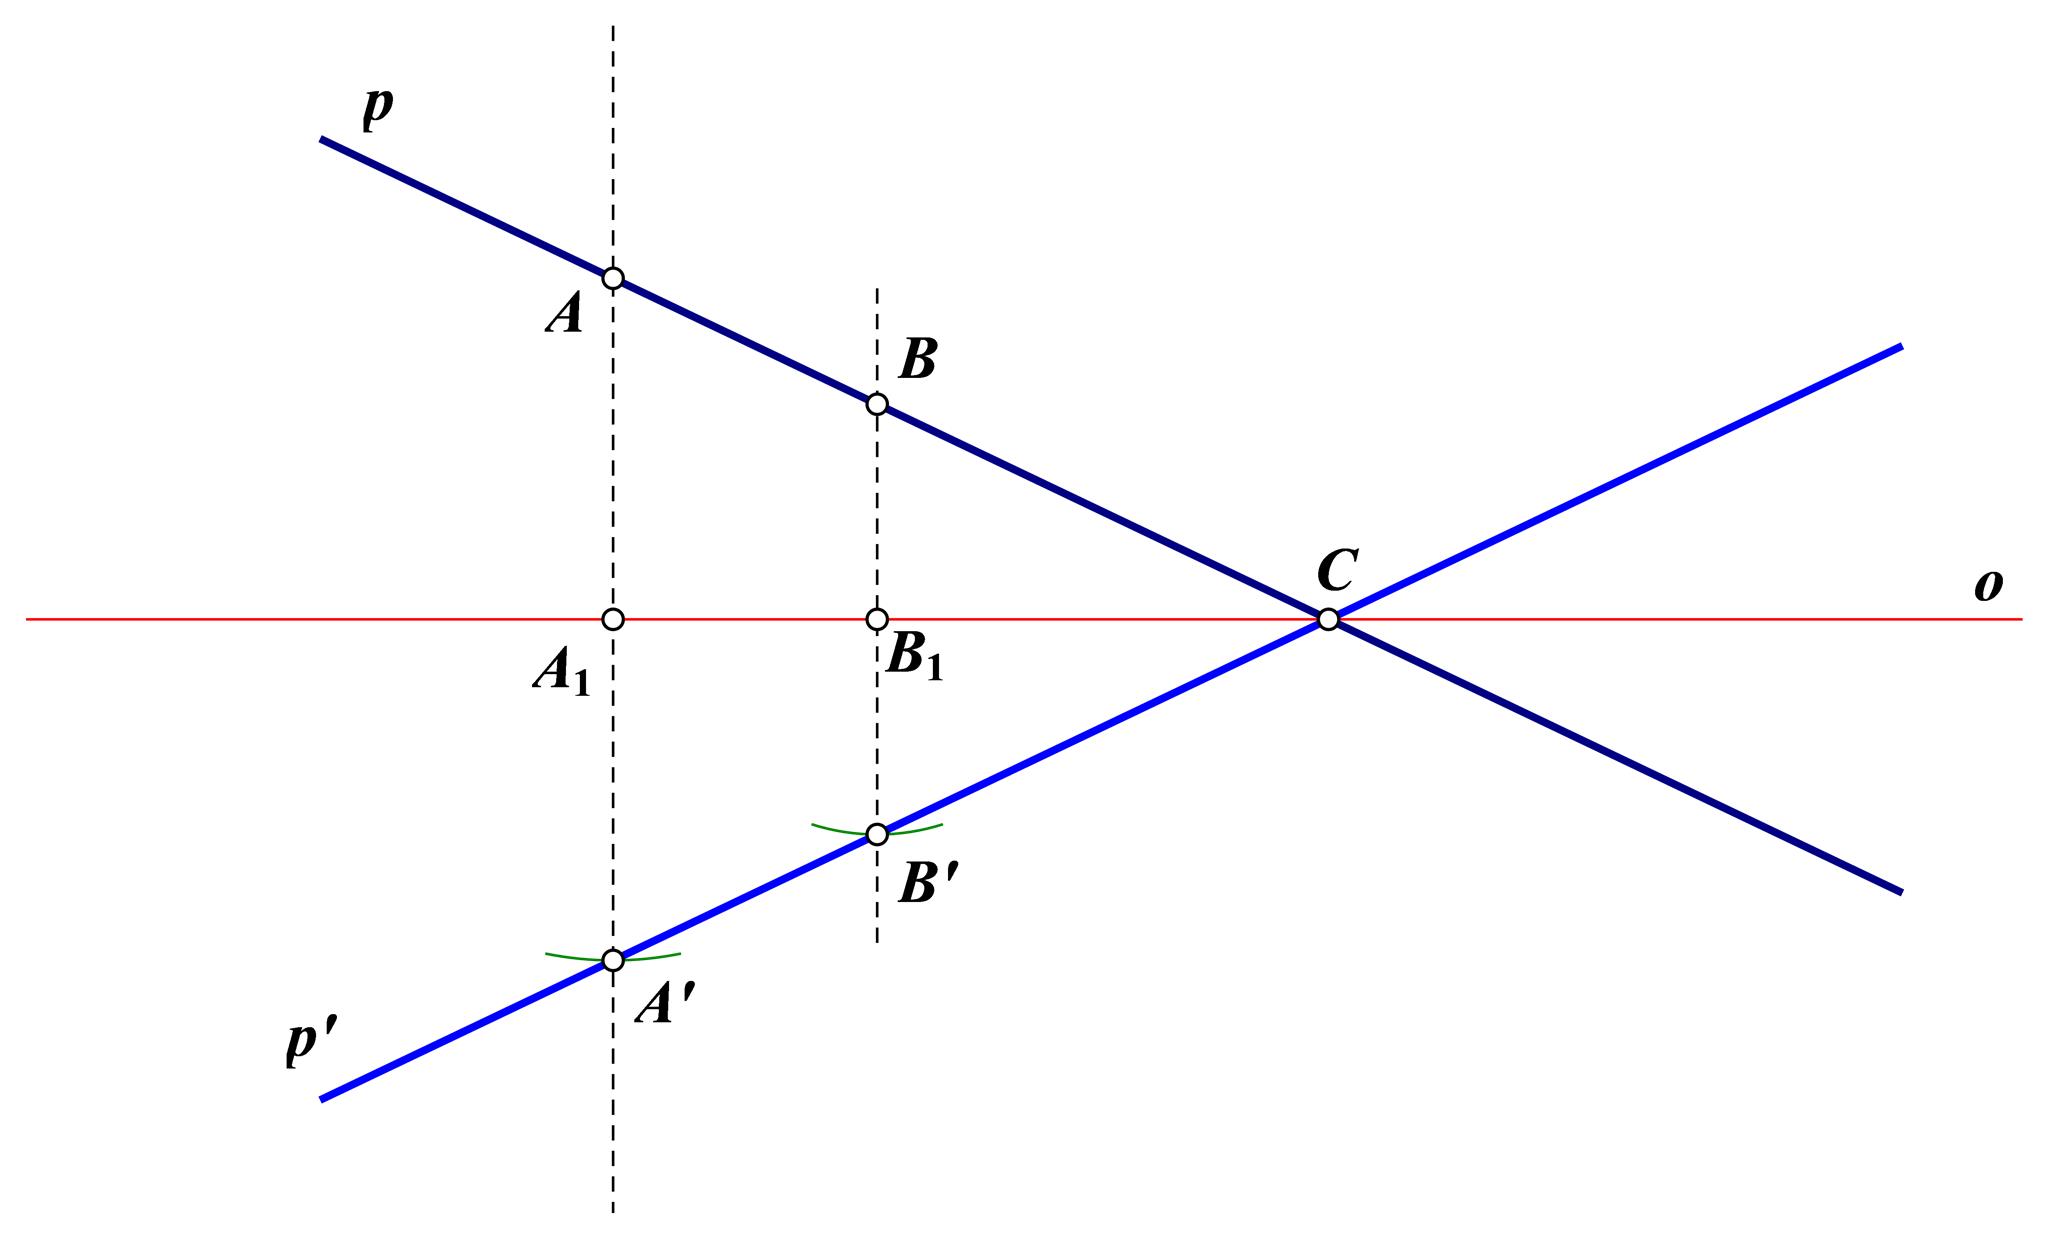 Na slici je pravac p i njegova osnosimetrična slika, pravac p', s obzirom na os o. Na pravcu p istaknute su točke A i B, dok je točka C presjek pravaca p i o.